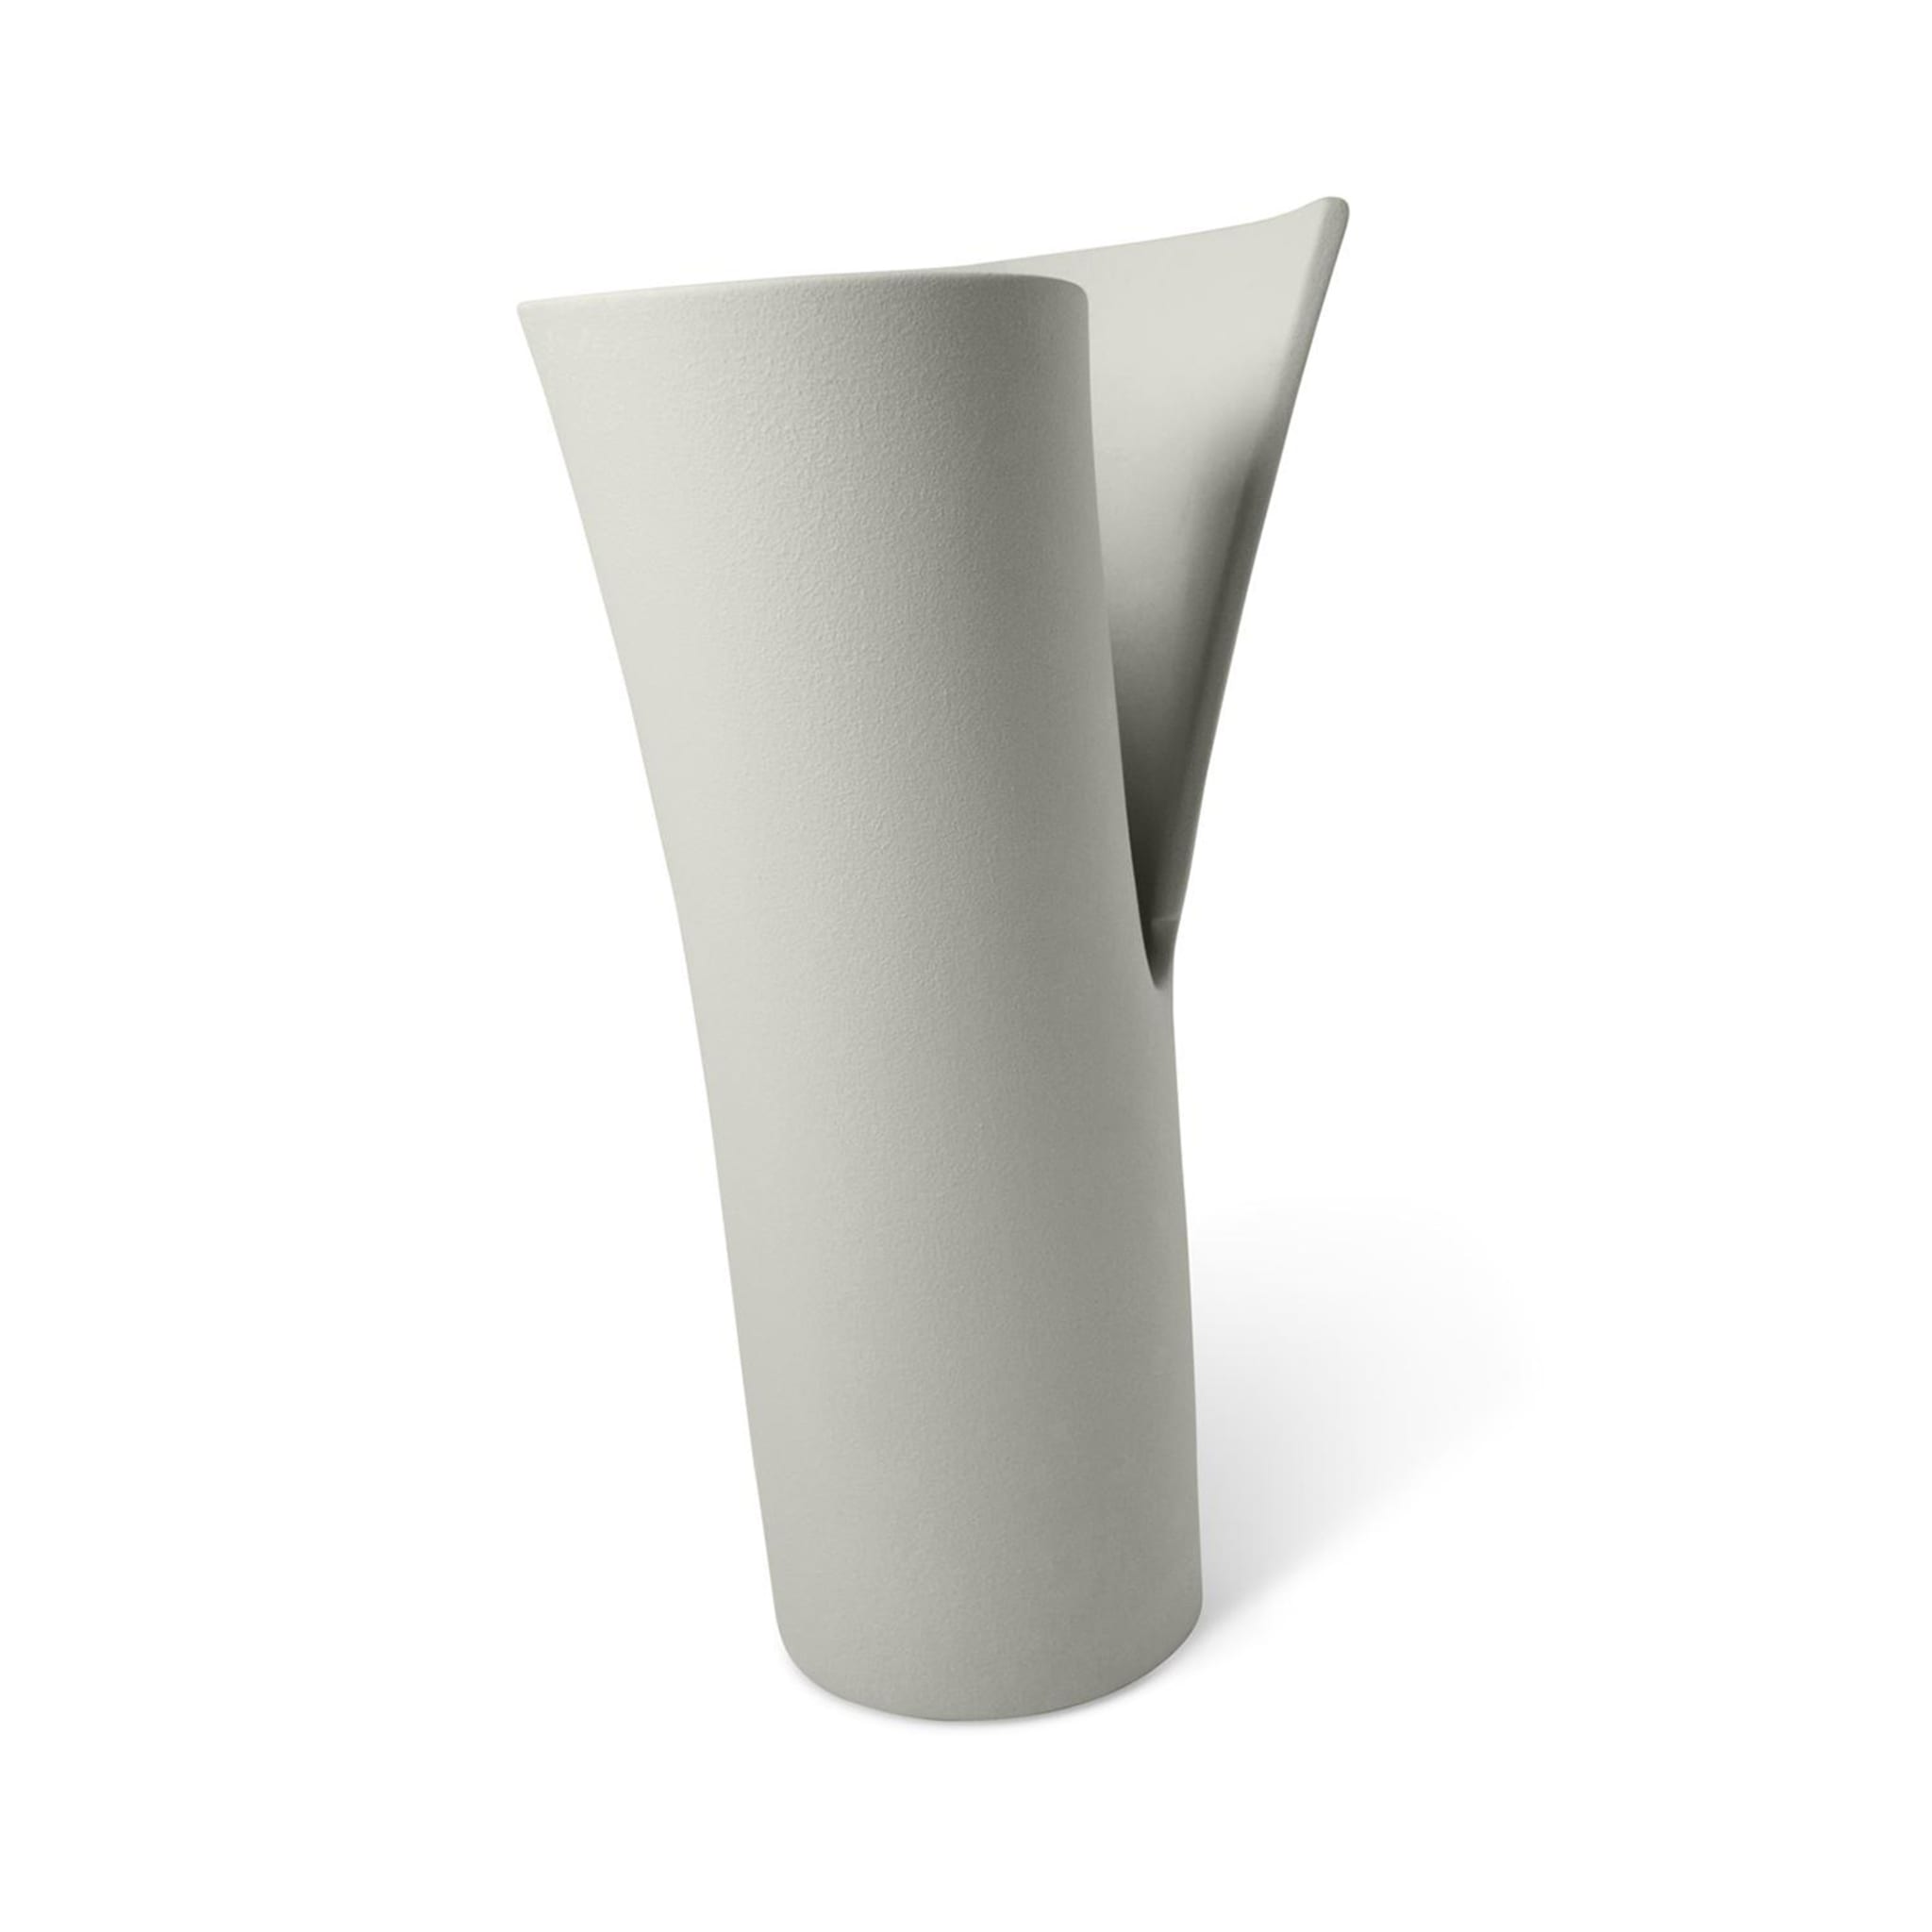 Helix Vase #3 - Alternative view 1